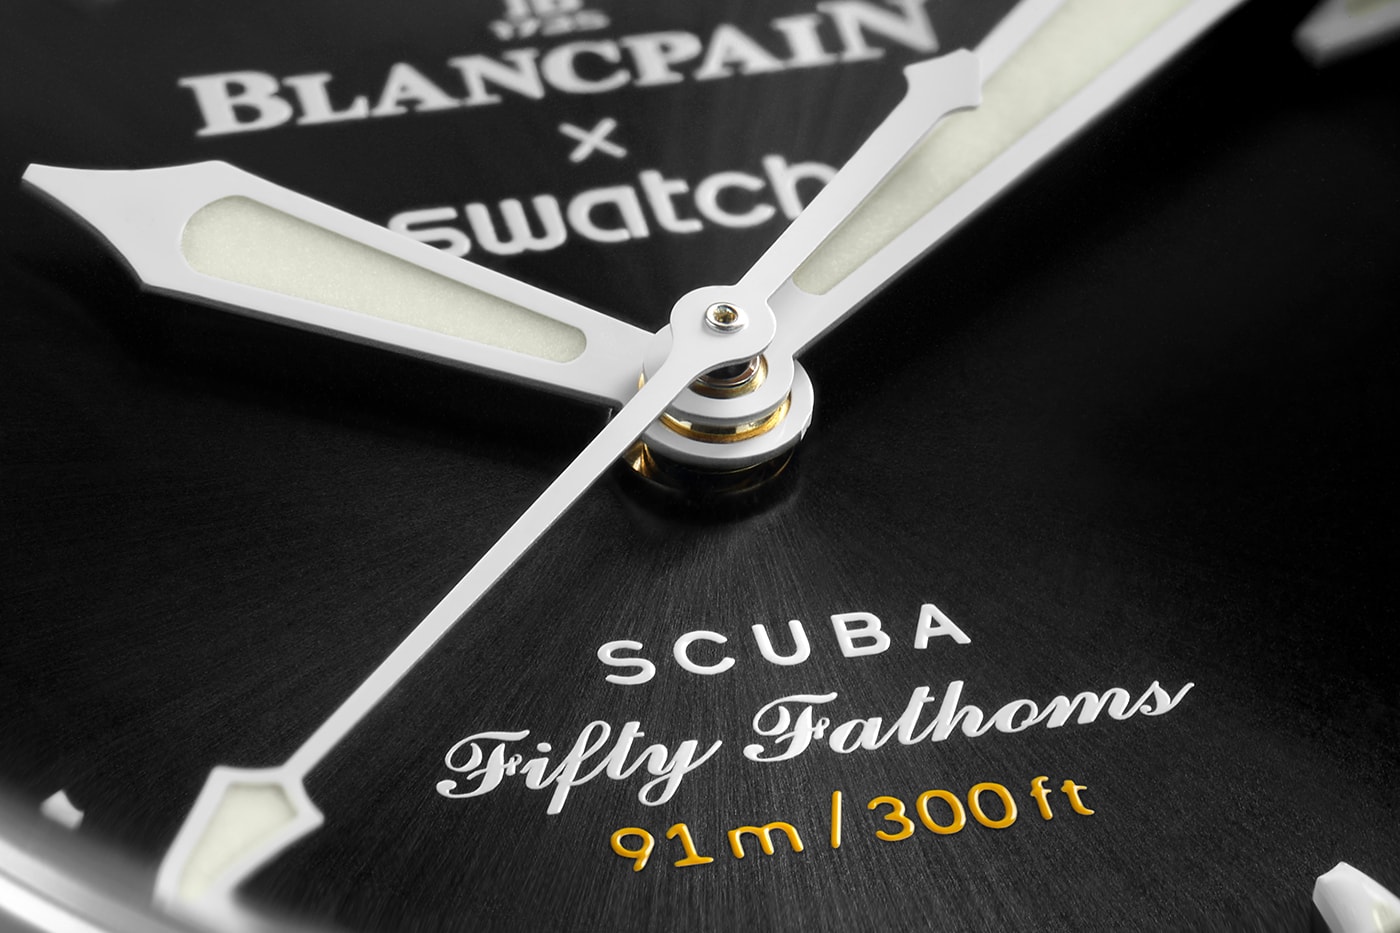 ブランパン x スウォッチから“月の海”をイメージした新作ウォッチ OCEAN OF STORMS が登場 Blancpain x Swatch Bioceramic Scuba Fifty Fathoms OCEAN OF STORMS Release Info